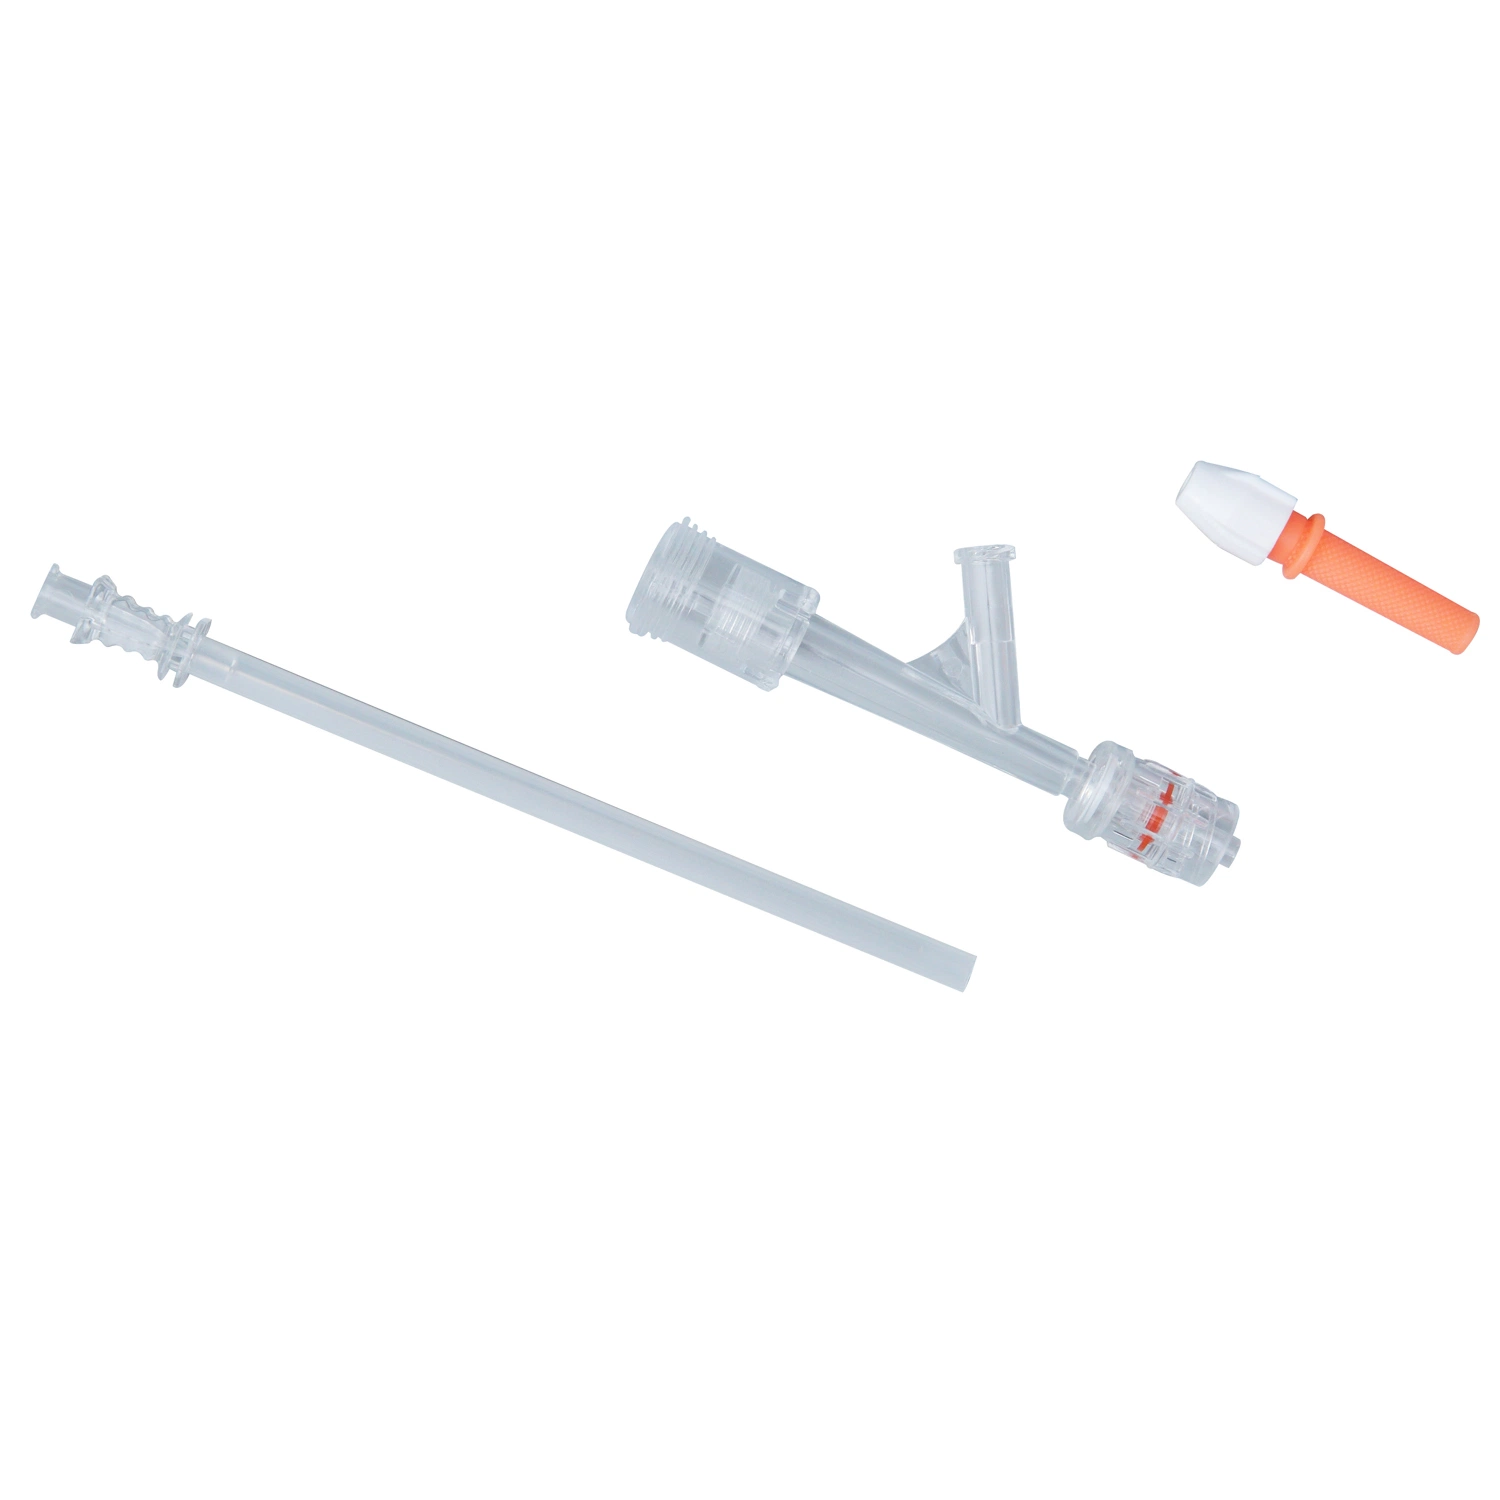 Pcta conector y el funcionamiento de la válvula de la Hemostasia suministros médicos